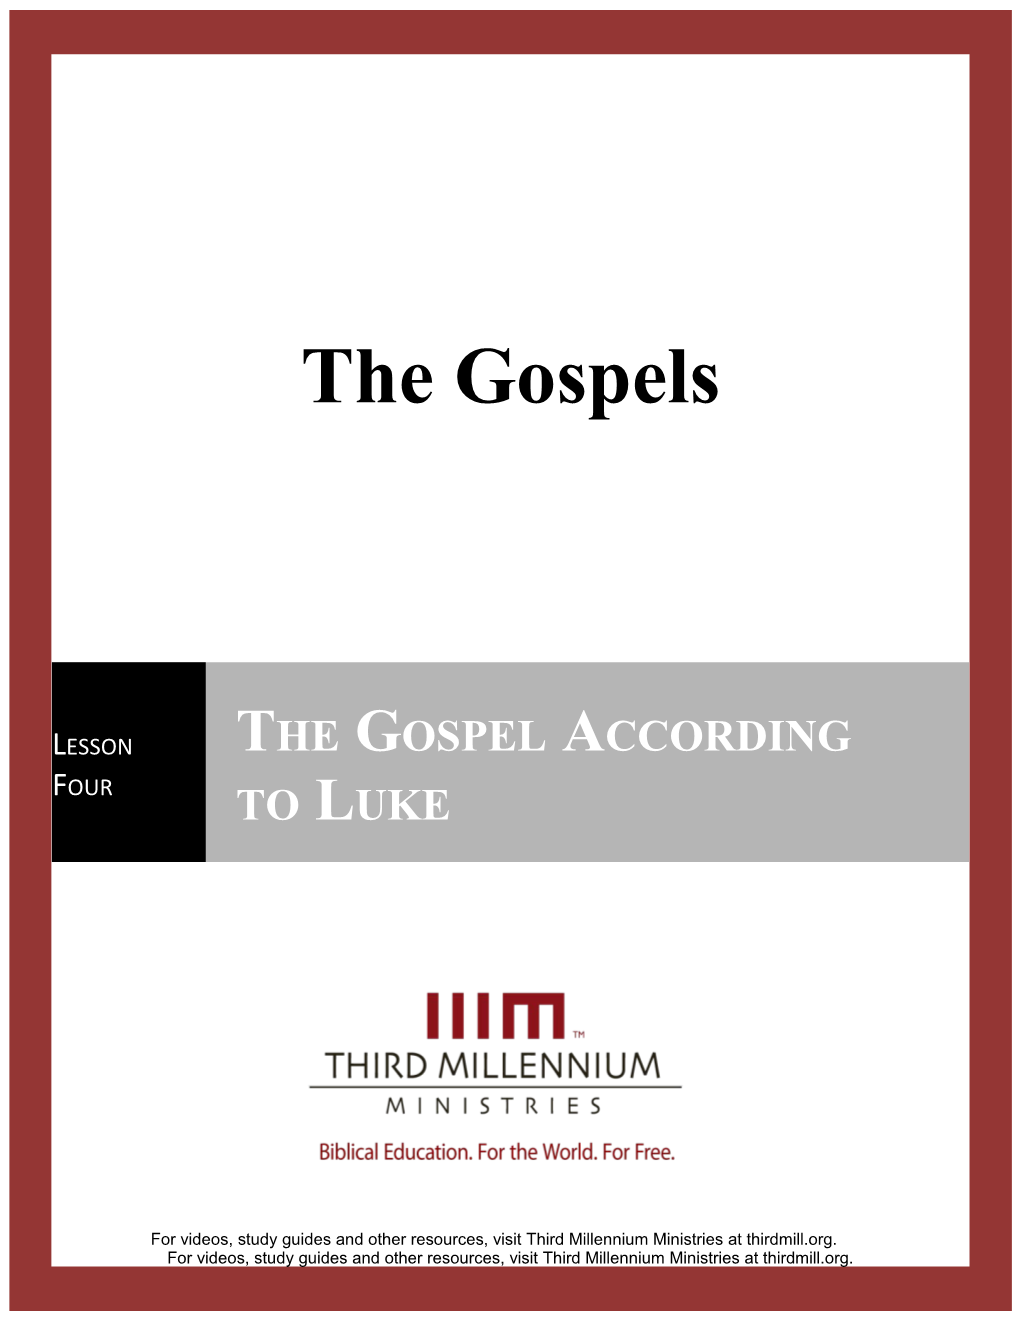 The Gospels, Lesson 4